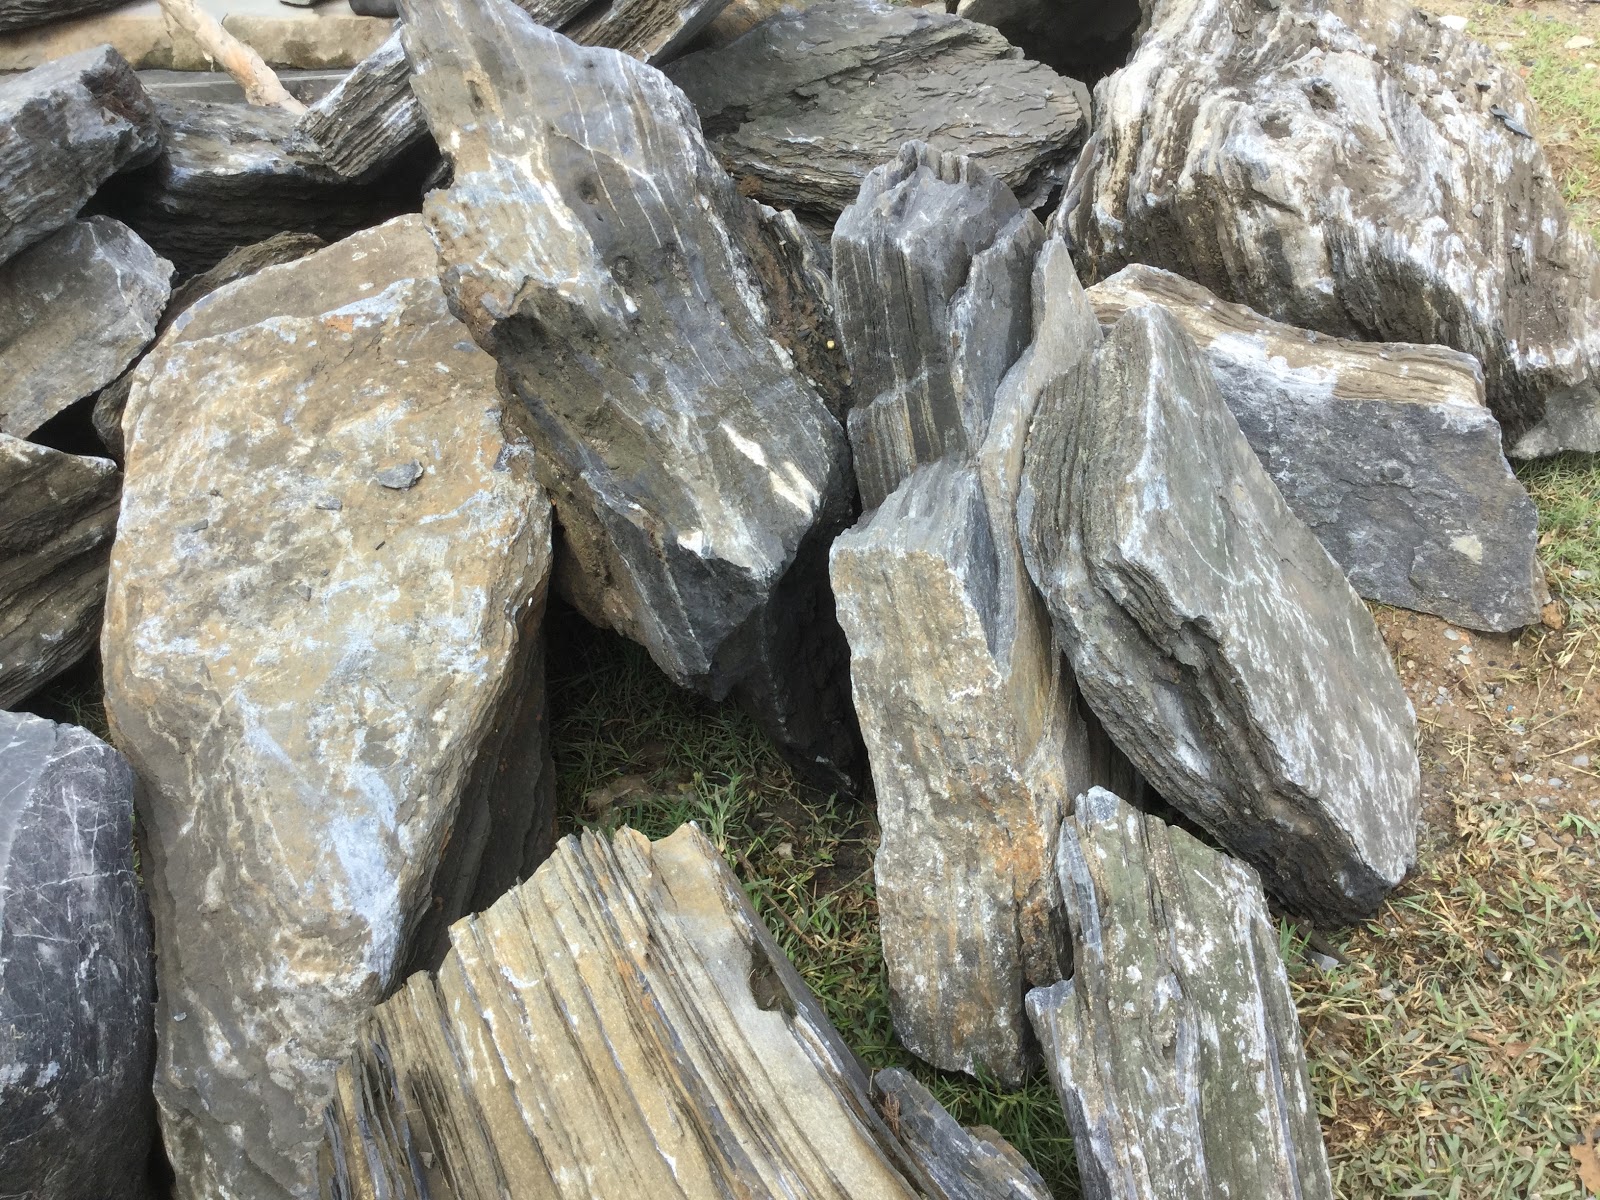 đá xếp tầng là một loại đá có thể được dùng trong bể thủy sinh